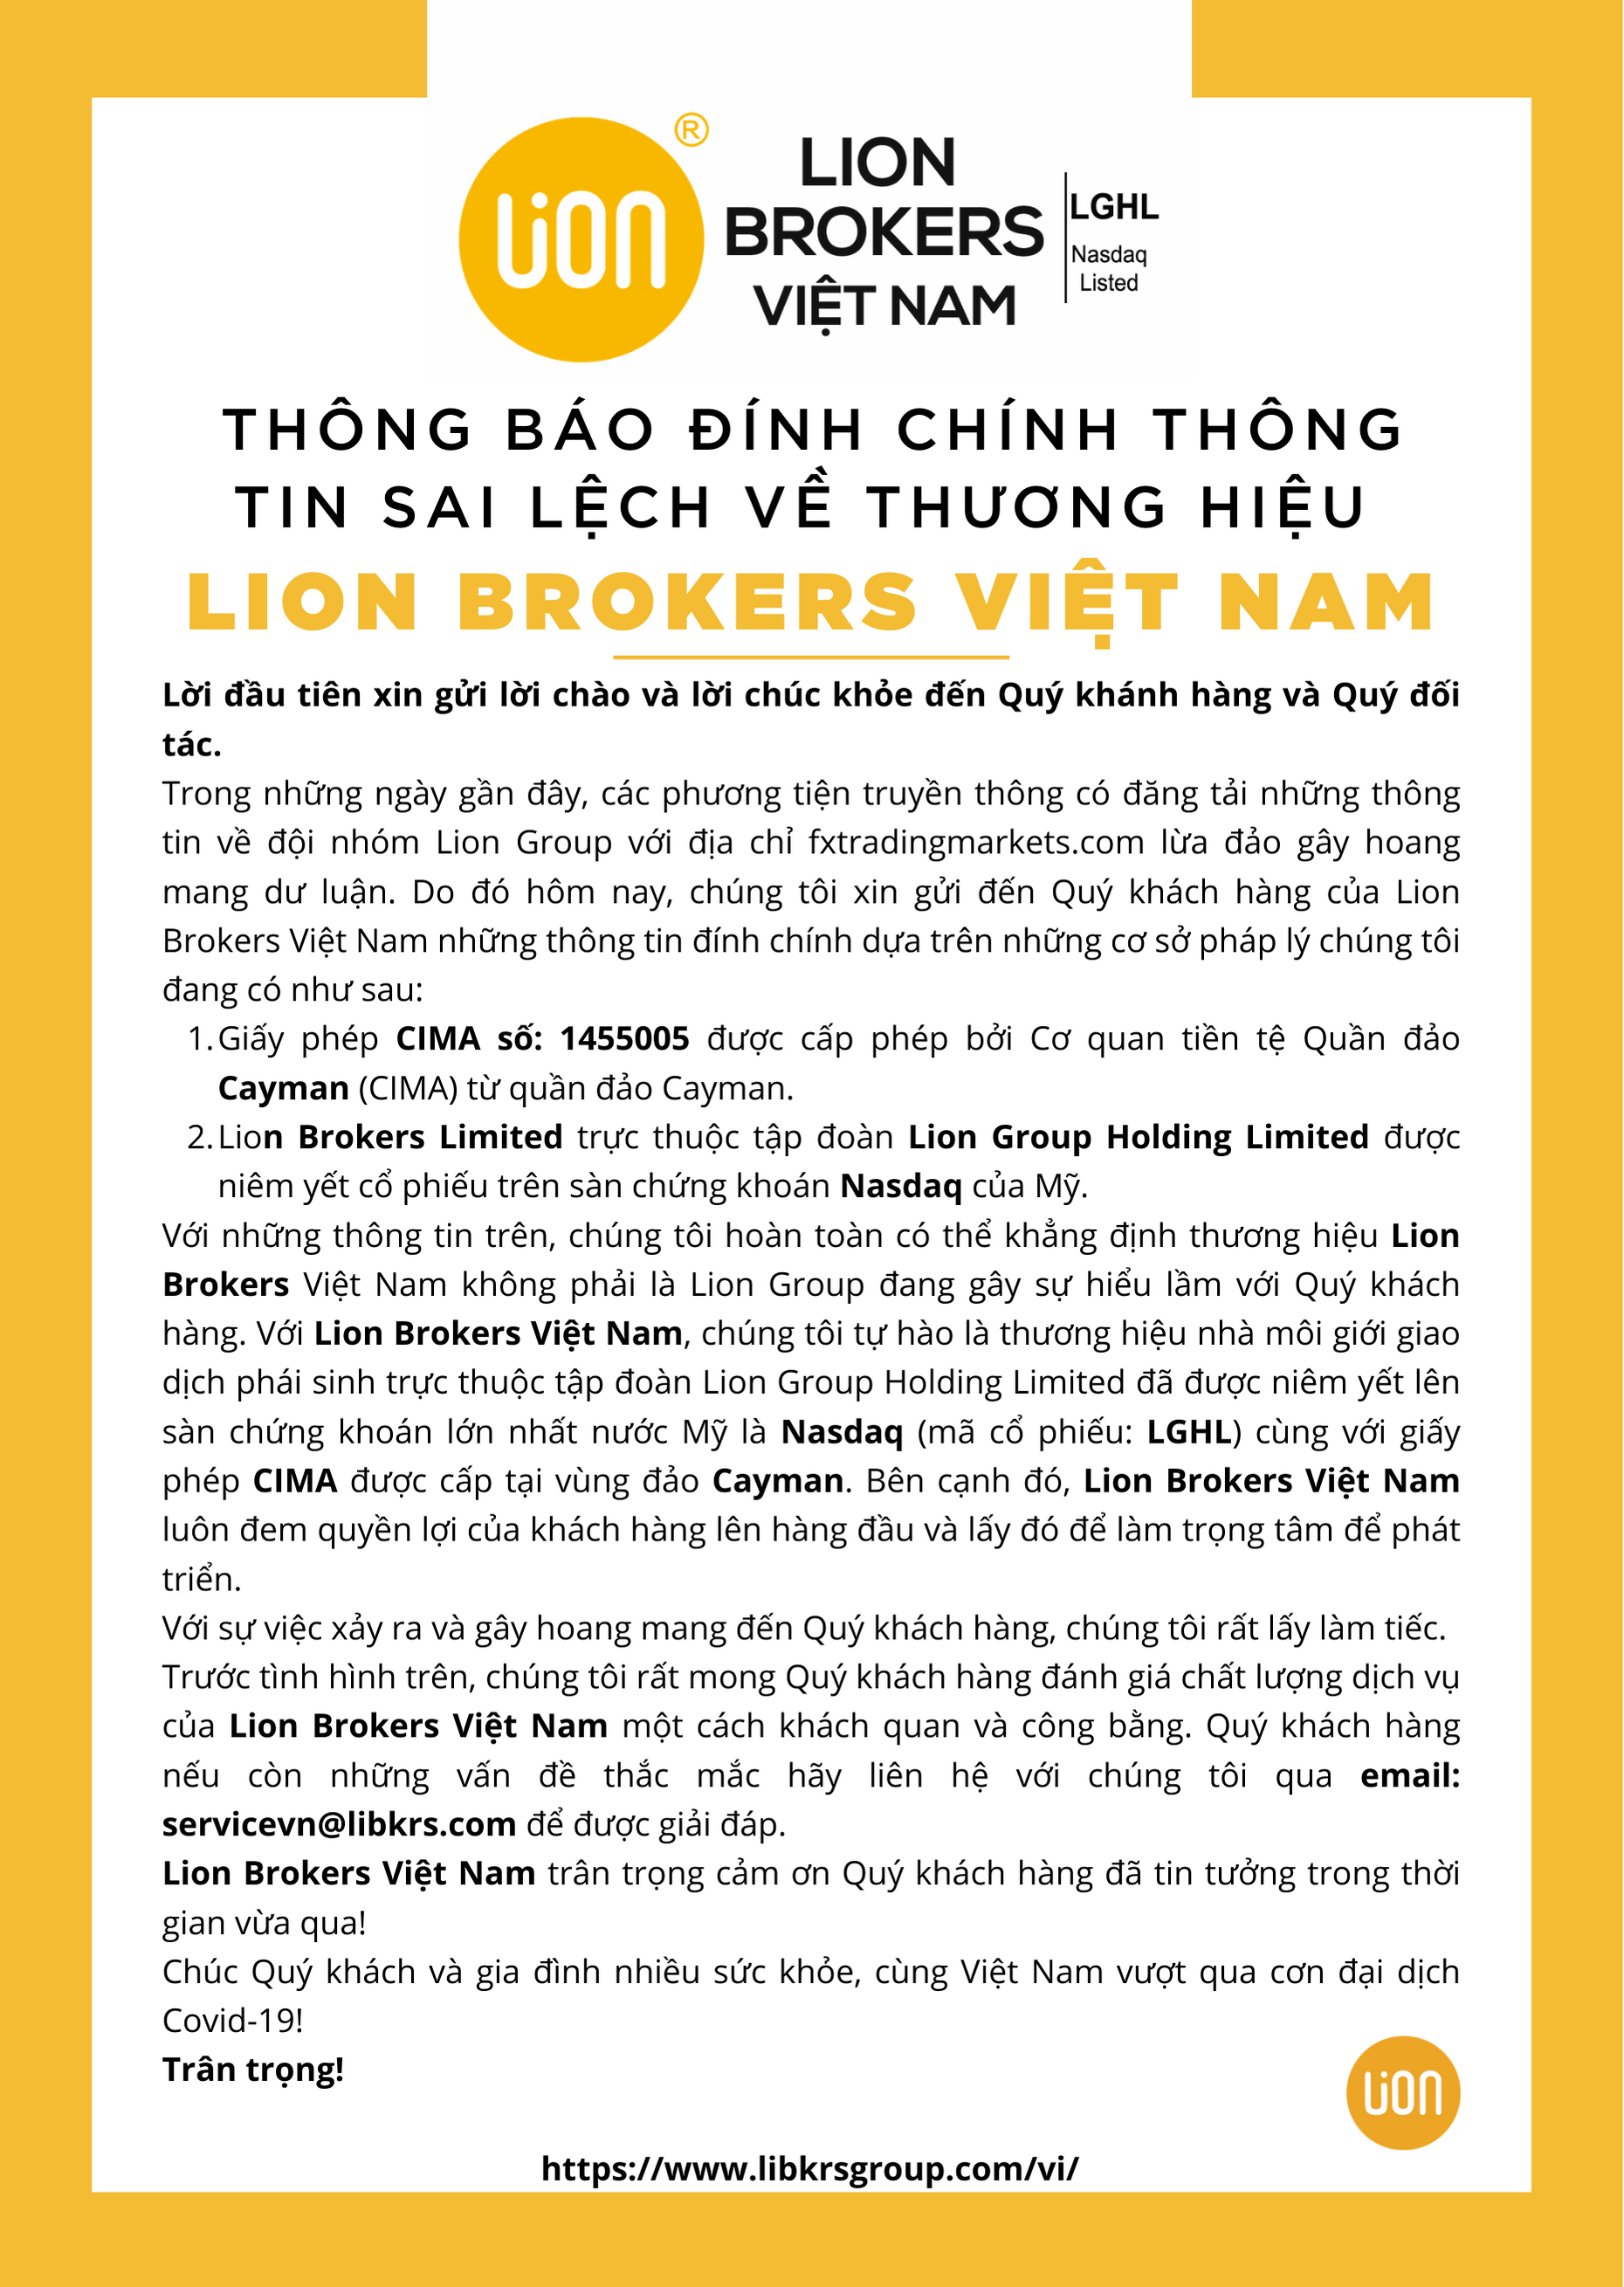 Thông báo đính chính thông tin về sàn Lion Brokers Việt Nam